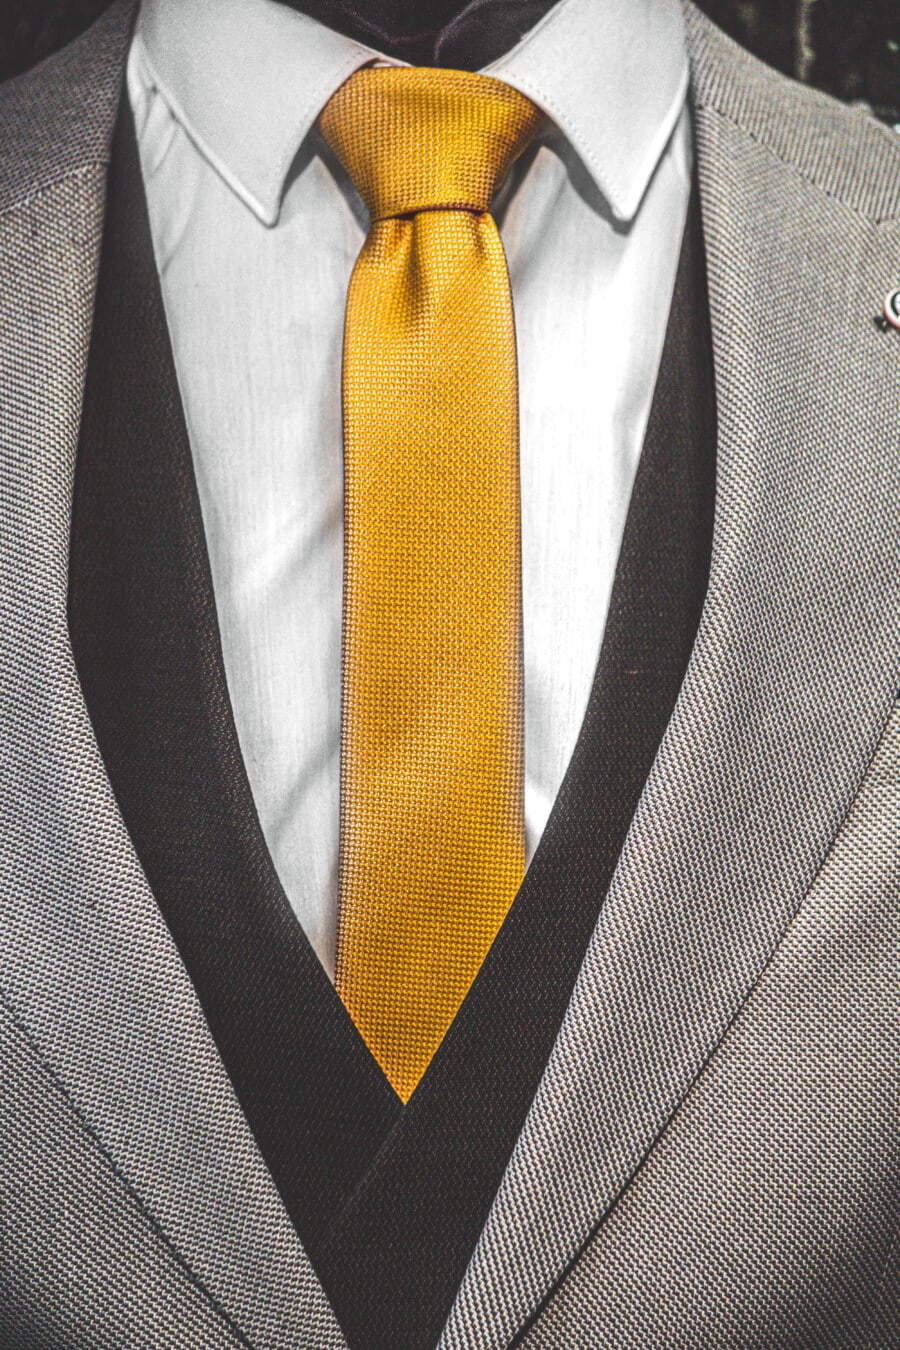 žlutá, kravata, smoking oblek, bunda, černá a bílá, textilní, Bavlna, oděv, podnikatel, oblek